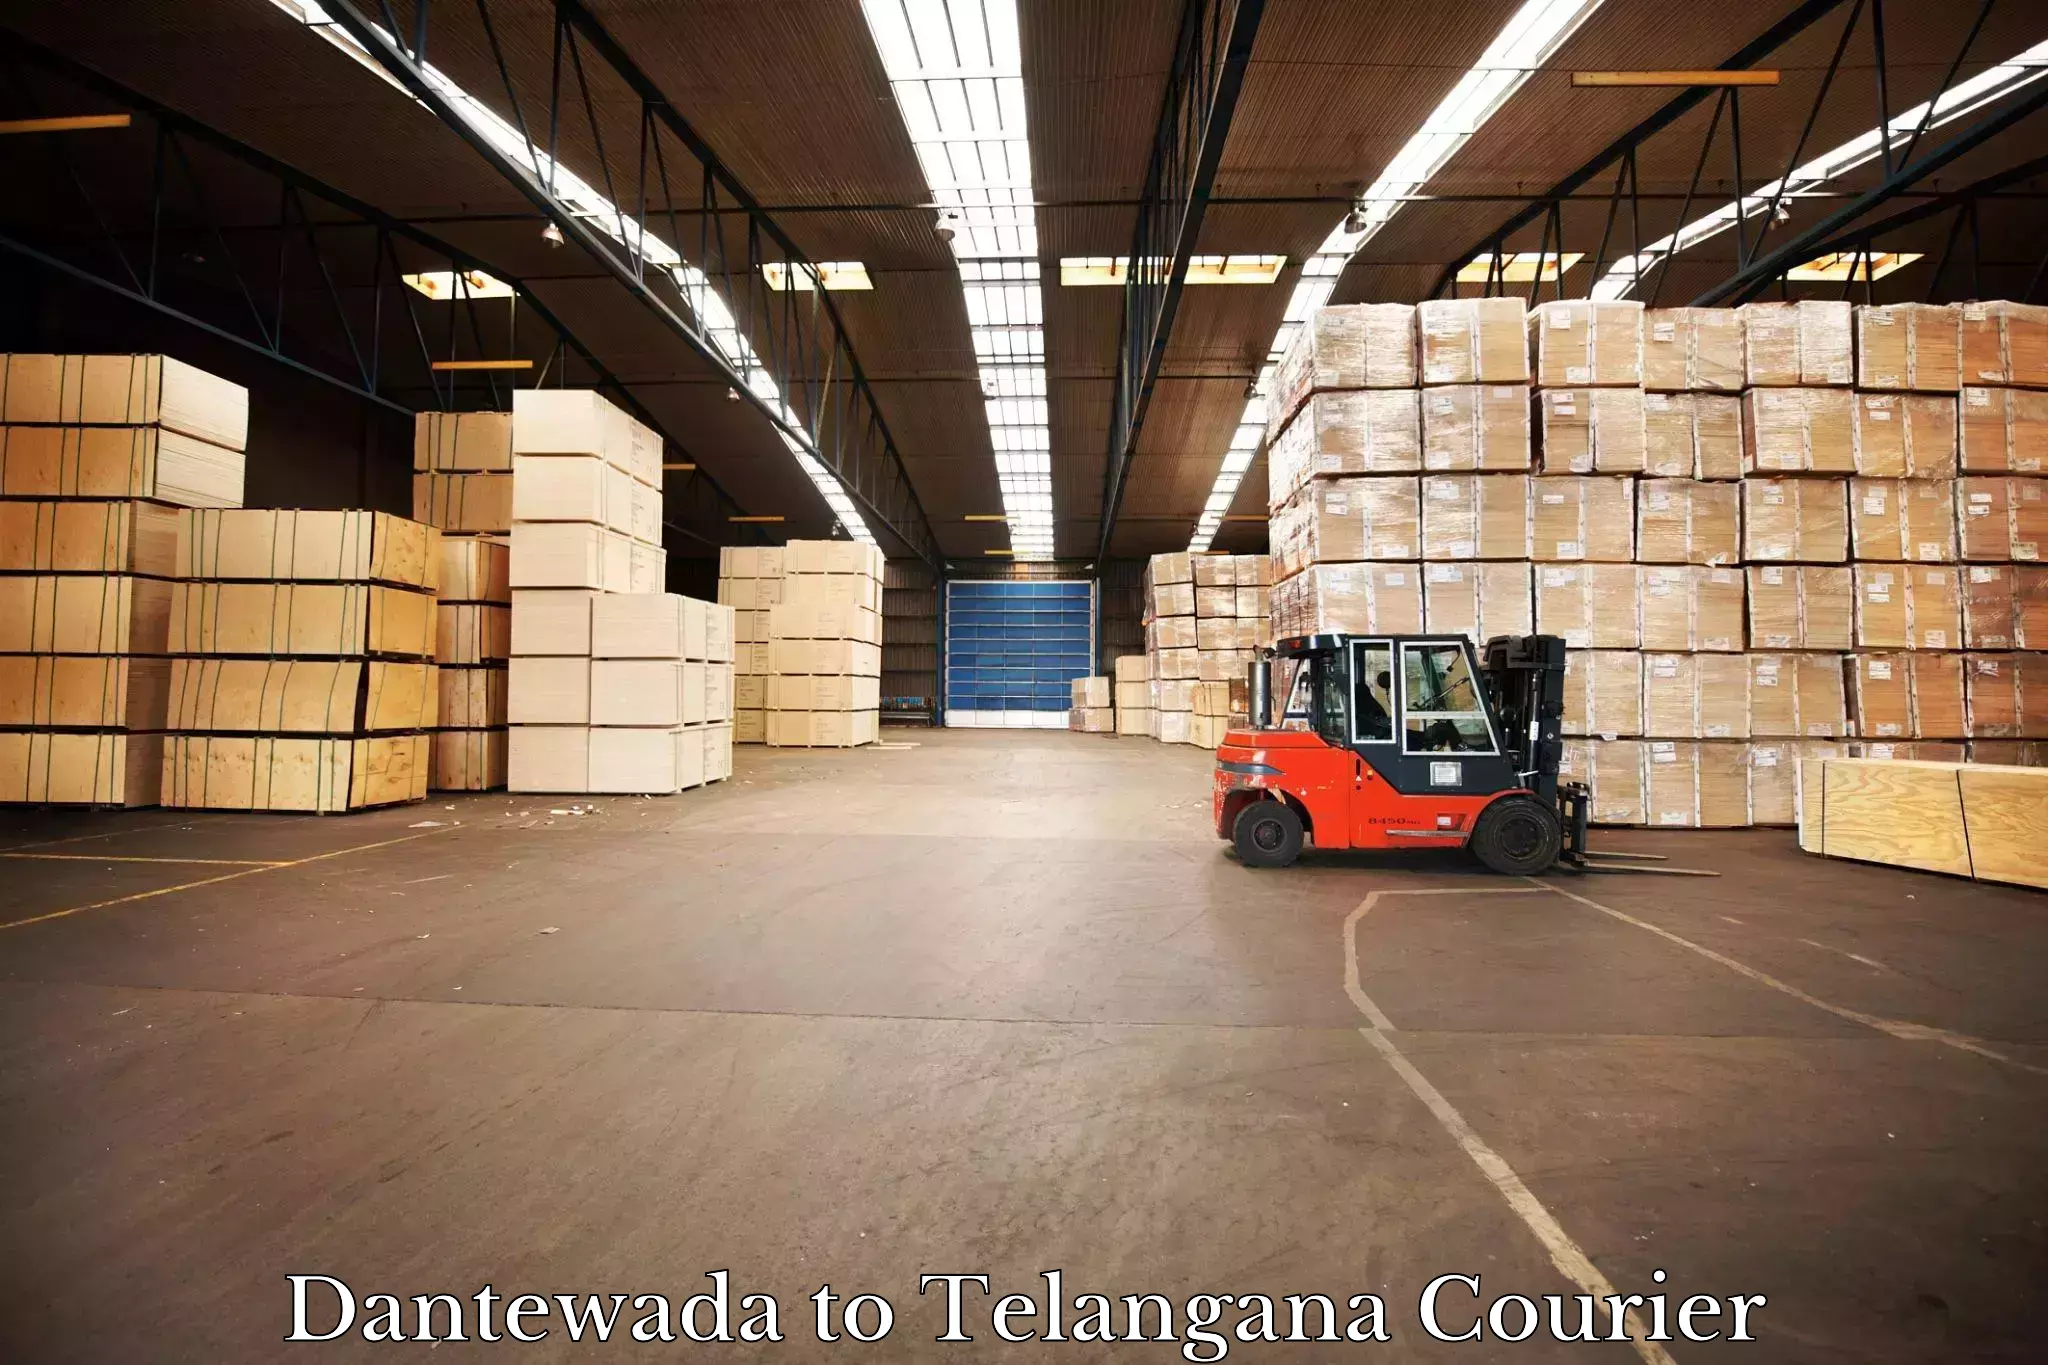 Courier service comparison Dantewada to Jogipet